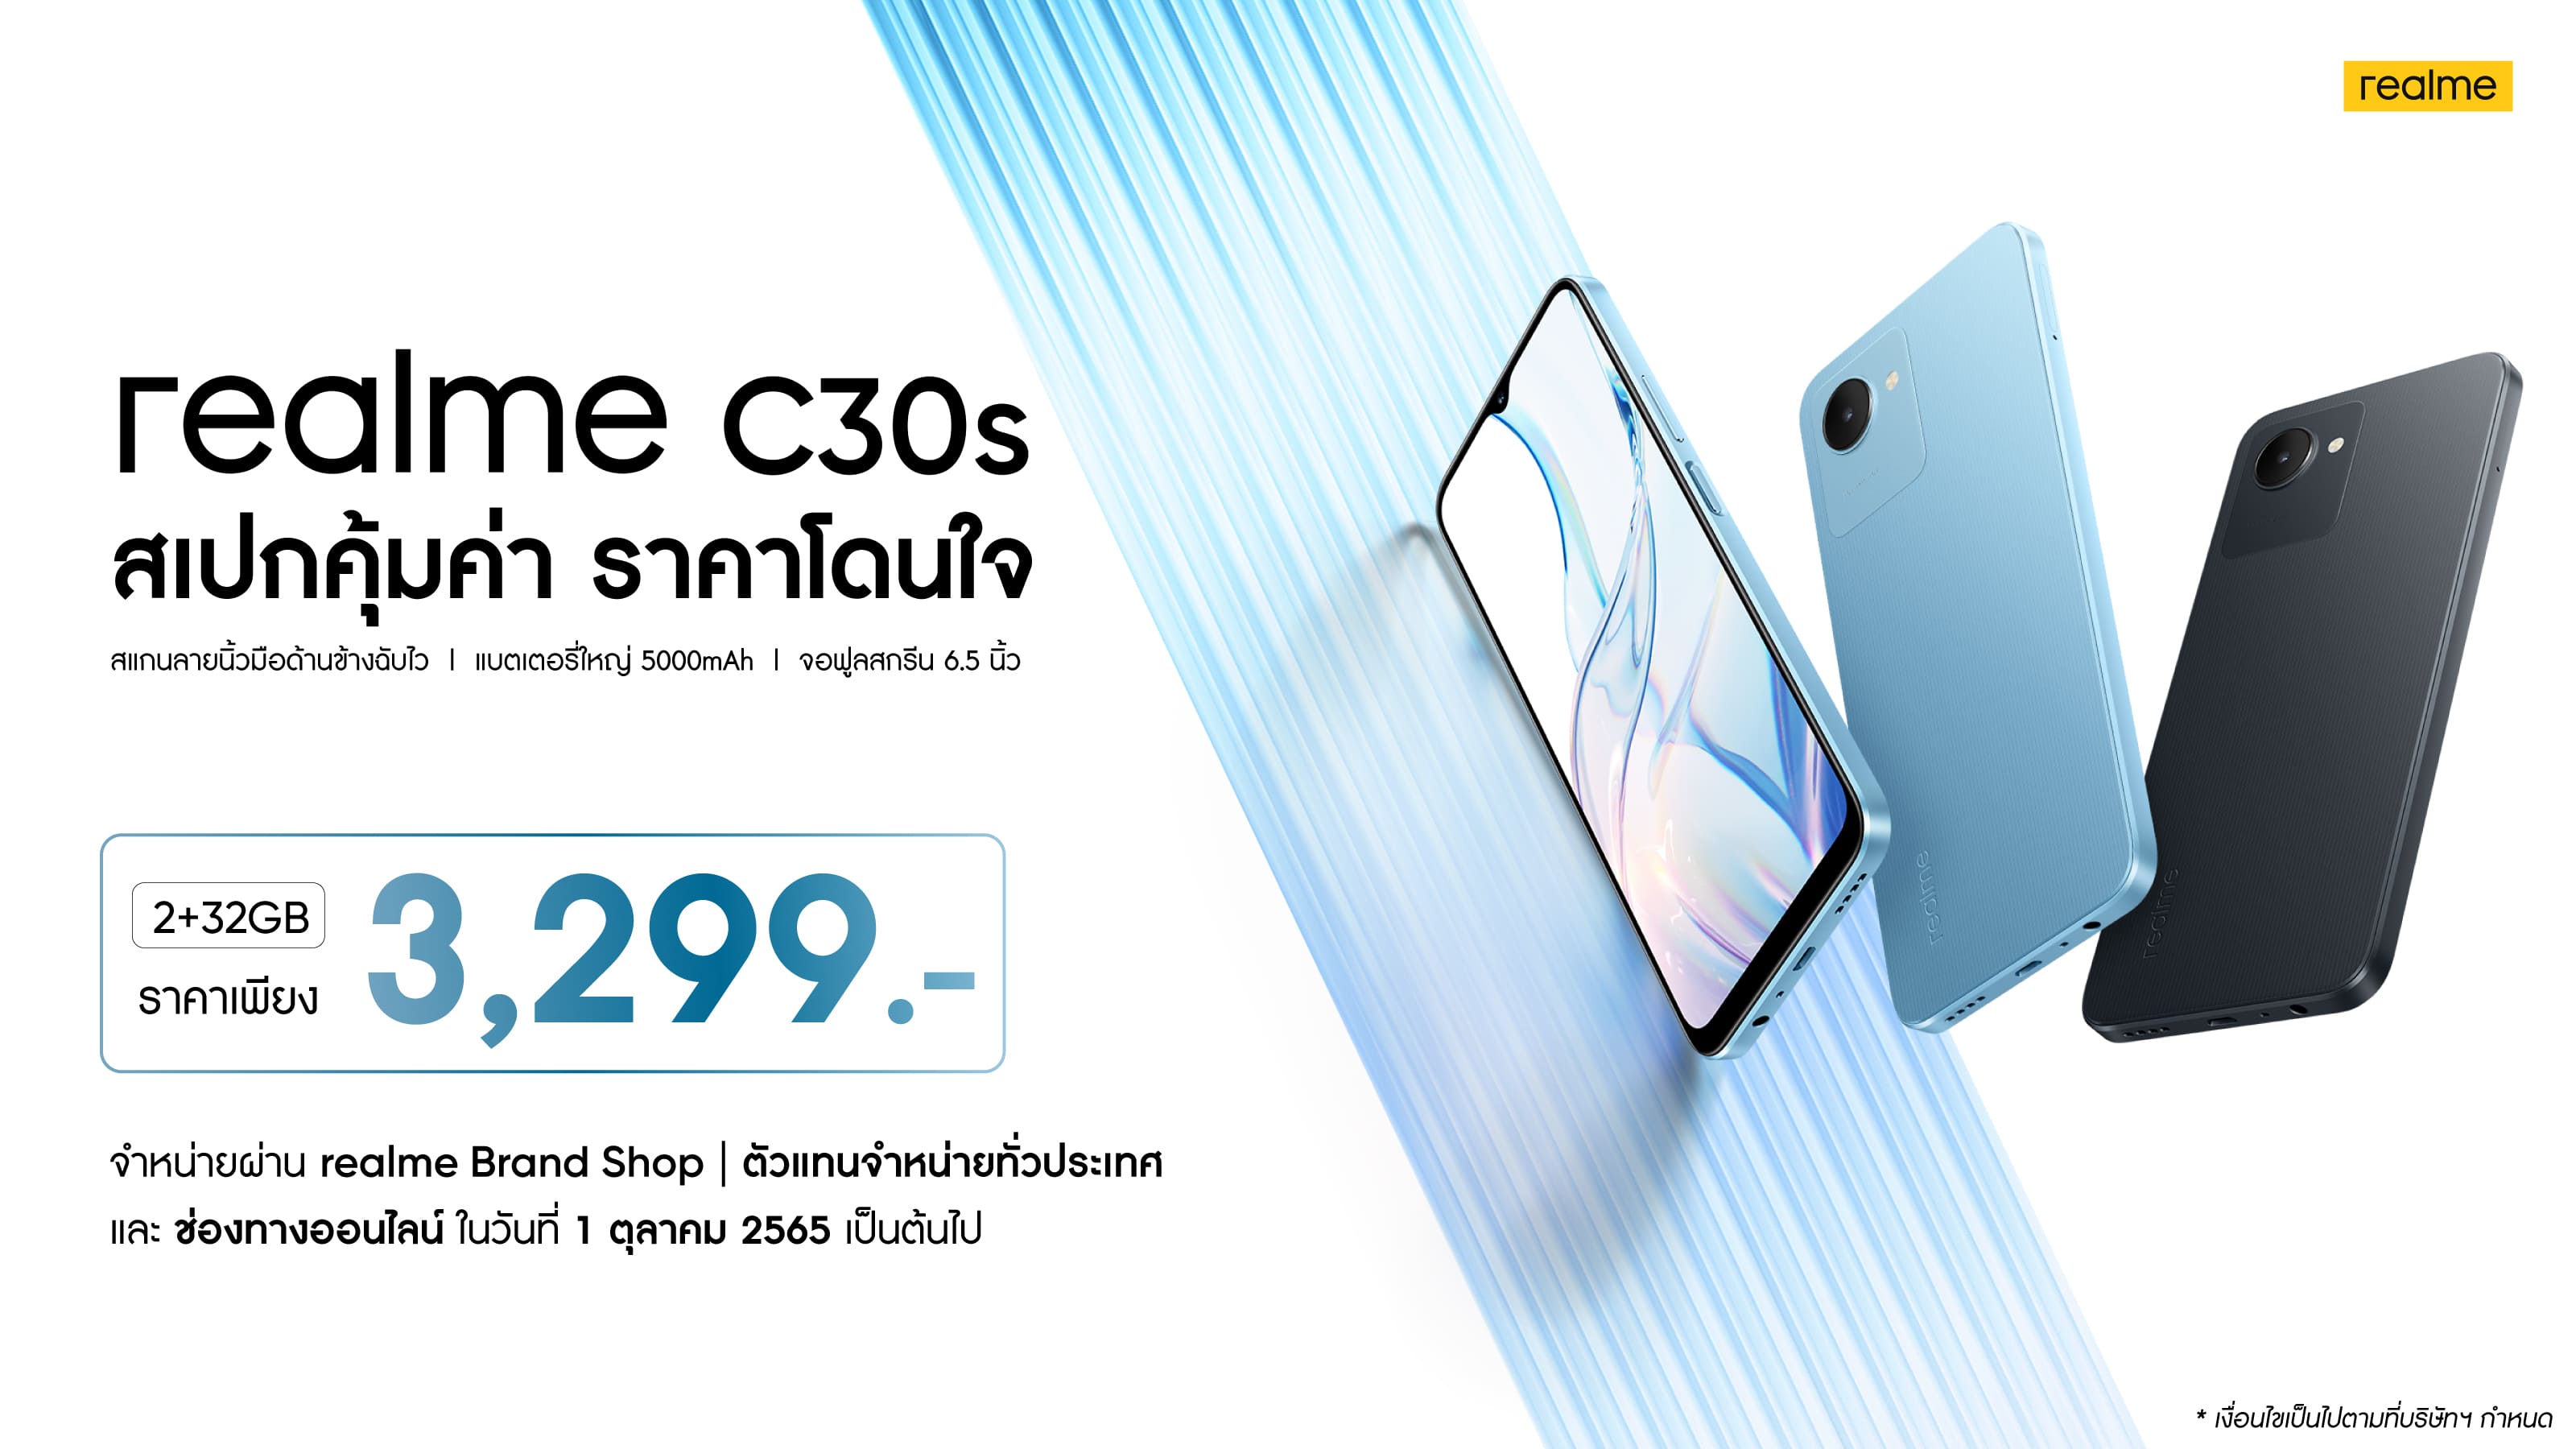 ราคา realme C30s 1 | Realme | เรียลมี เปิดตัว realme C30s ในไทย มือถือราคา 3,299 บาท! รุ่นเดียวที่มากับสแกนลายนิ้วมือด้านข้าง